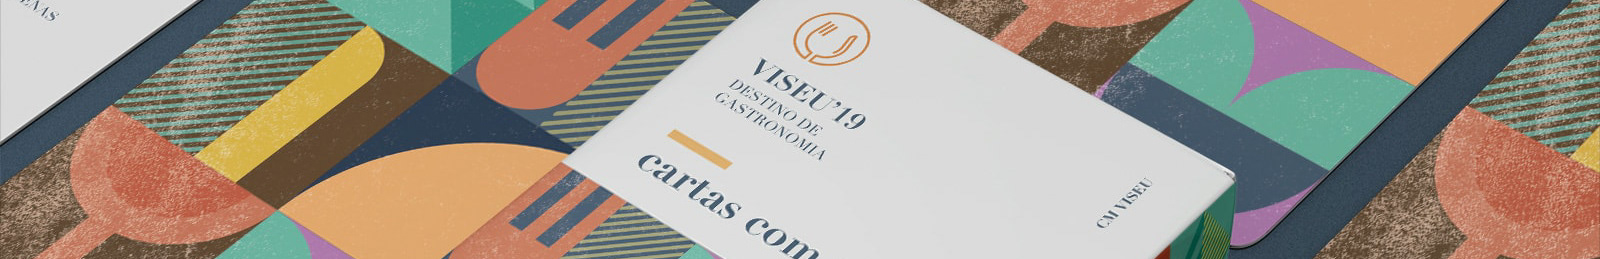 Gráficos Associados's profile banner